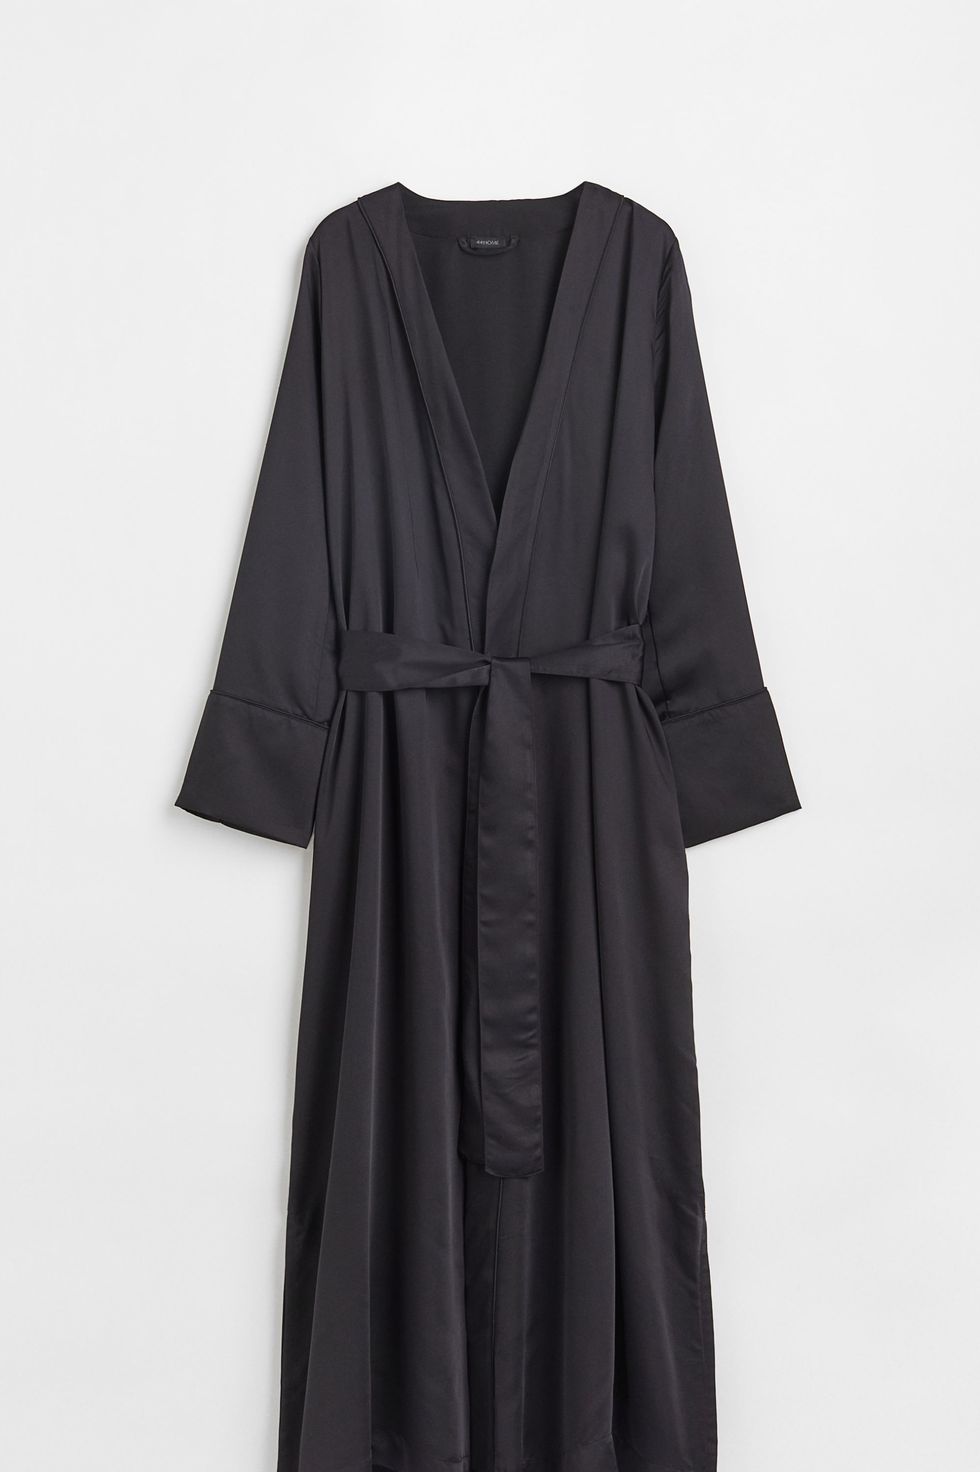 Women's dressing gowns: 15 best bathrobes for women